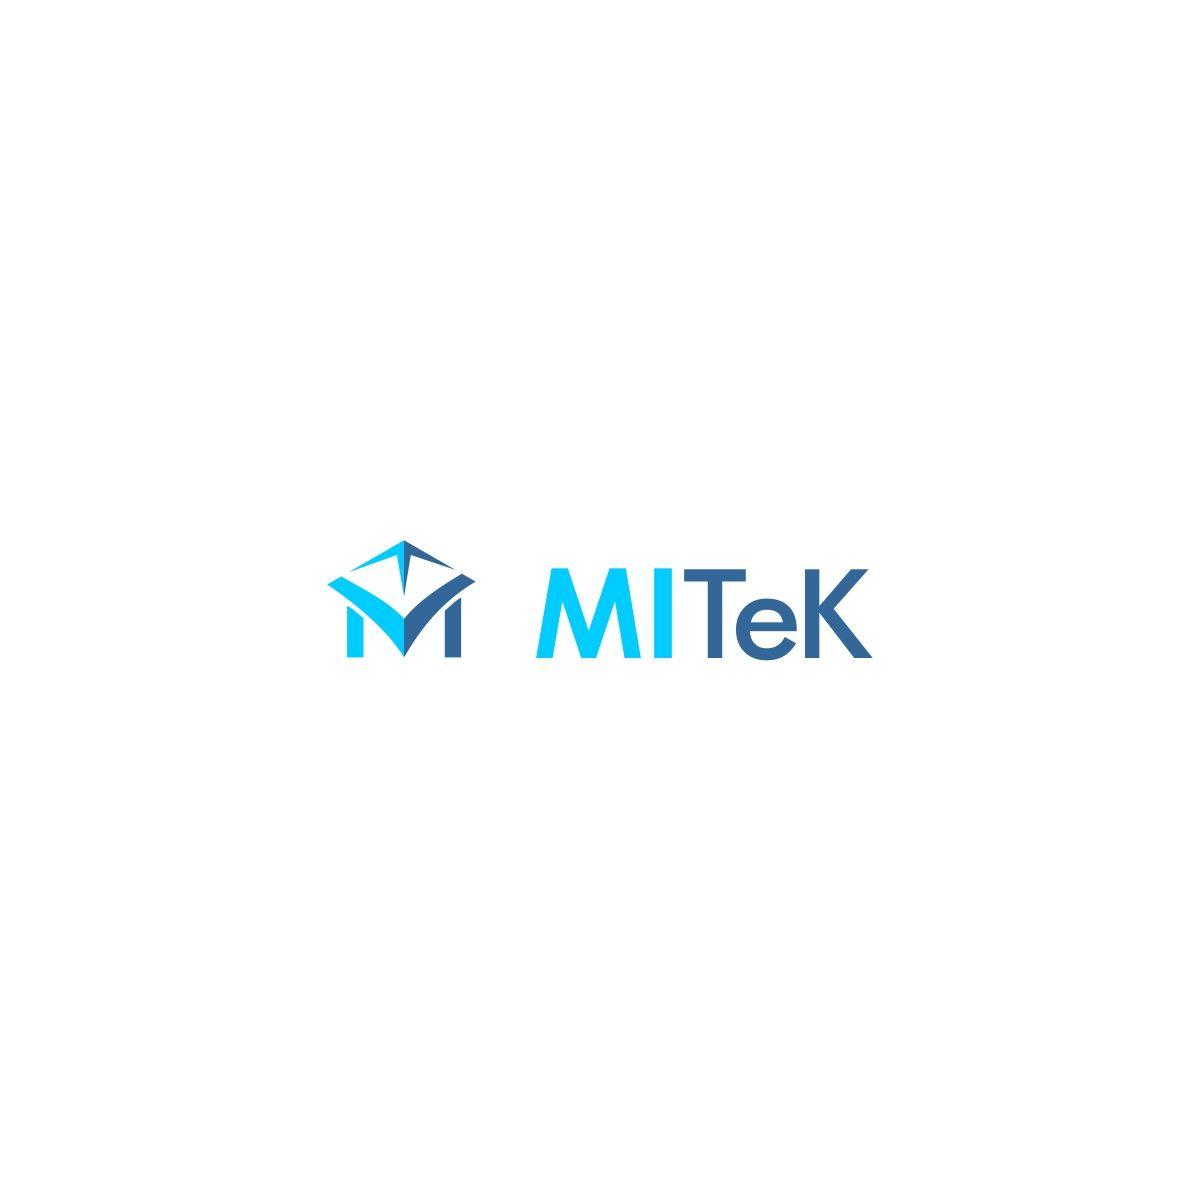 Mitek Logo - Logo Design for MITeK by ekakatrok | Design #18490140